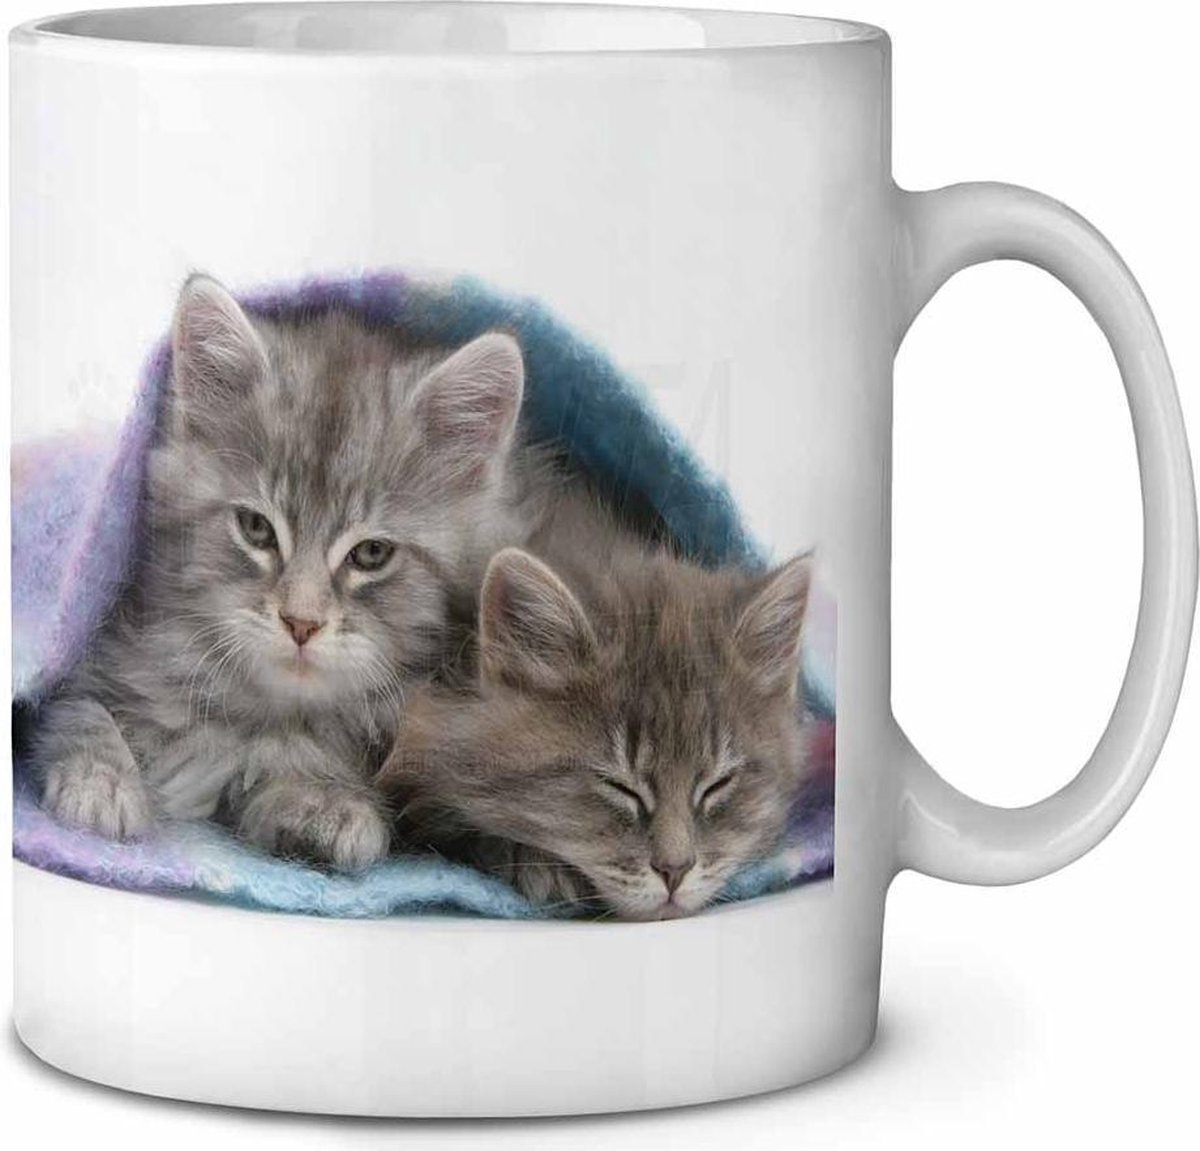 Kittens onder dekentje Koffie-thee mok